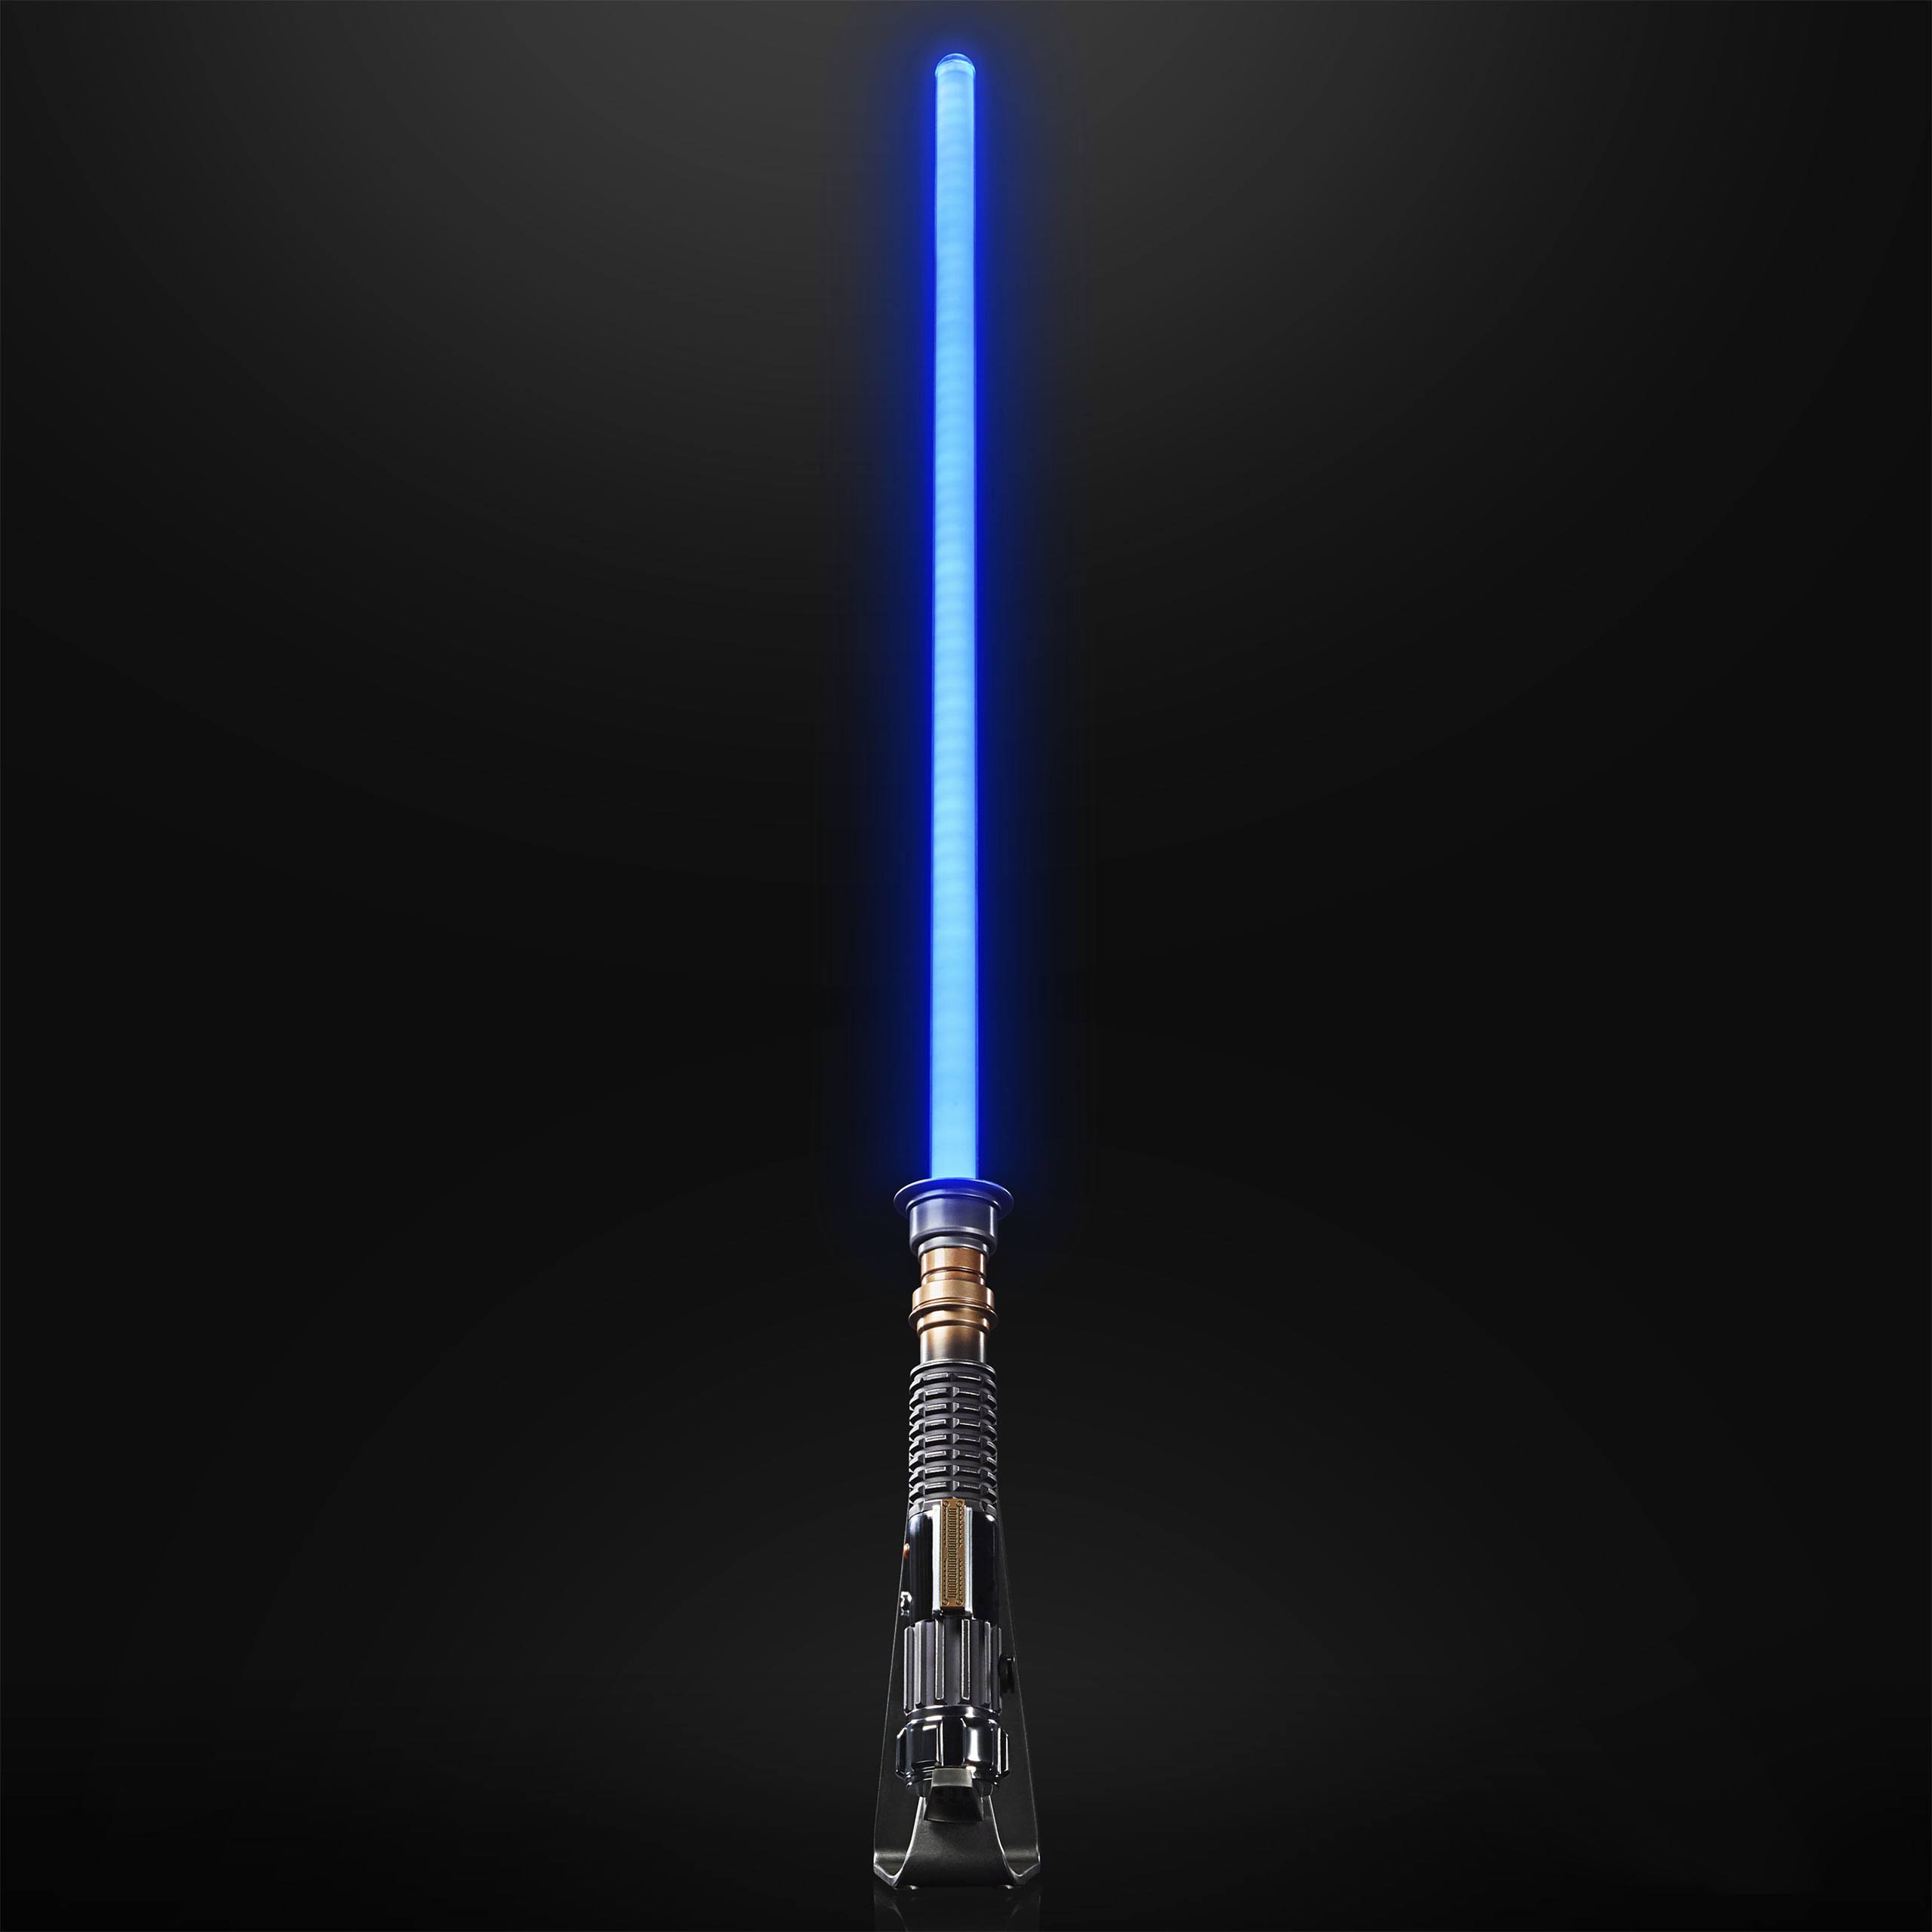 Star Wars: The Black Series Force FX Elite Obi-Wan Kenobi Lightsaber